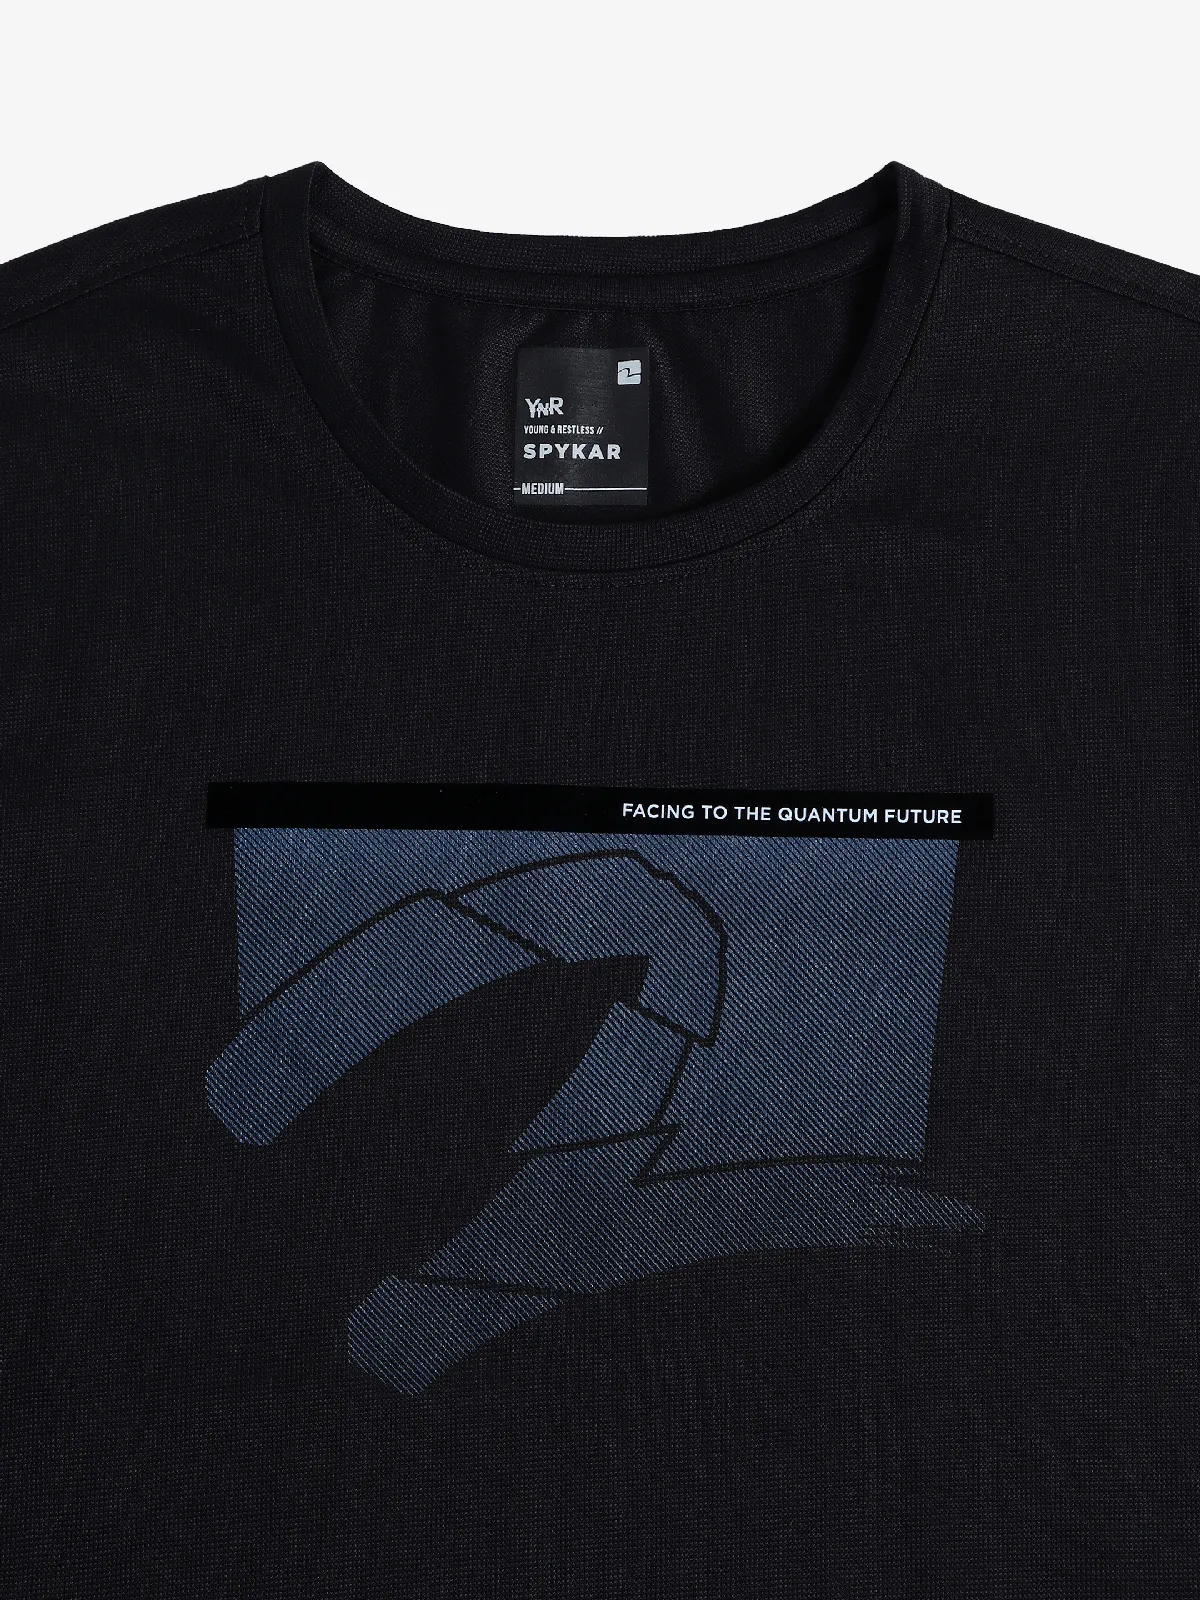 Spykar printed black t-shirt